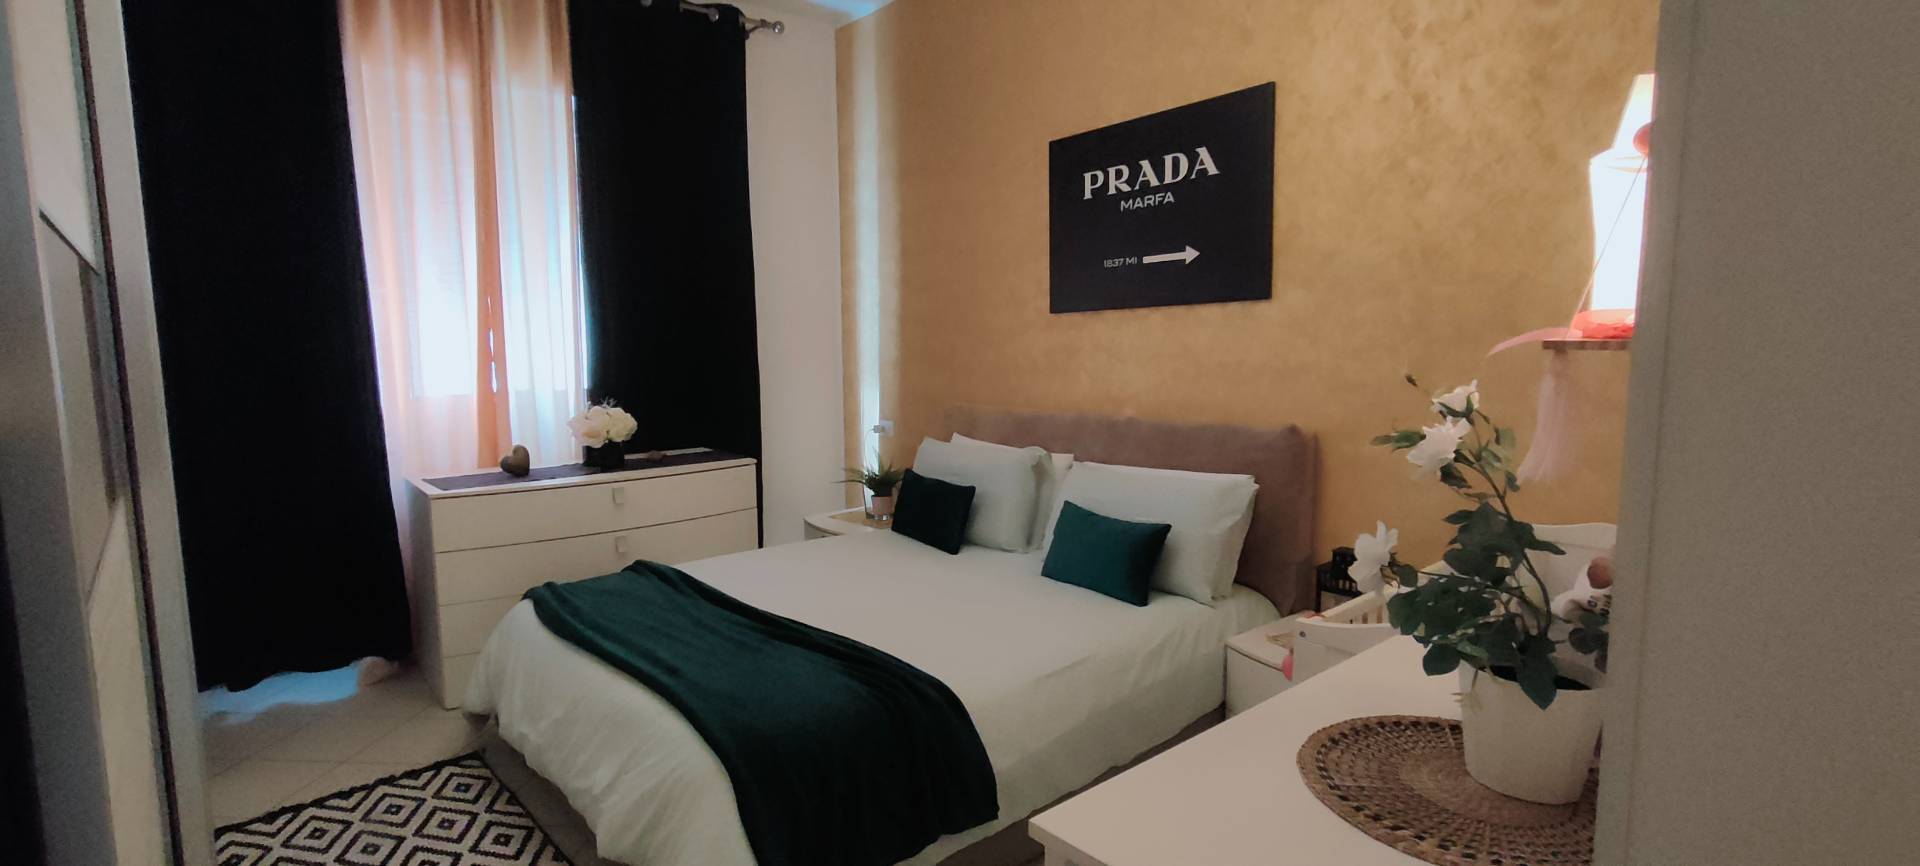 Appartamento in vendita a Rimini, 4 locali, zona Località: ViaDarioCampana, prezzo € 255.000 | PortaleAgenzieImmobiliari.it